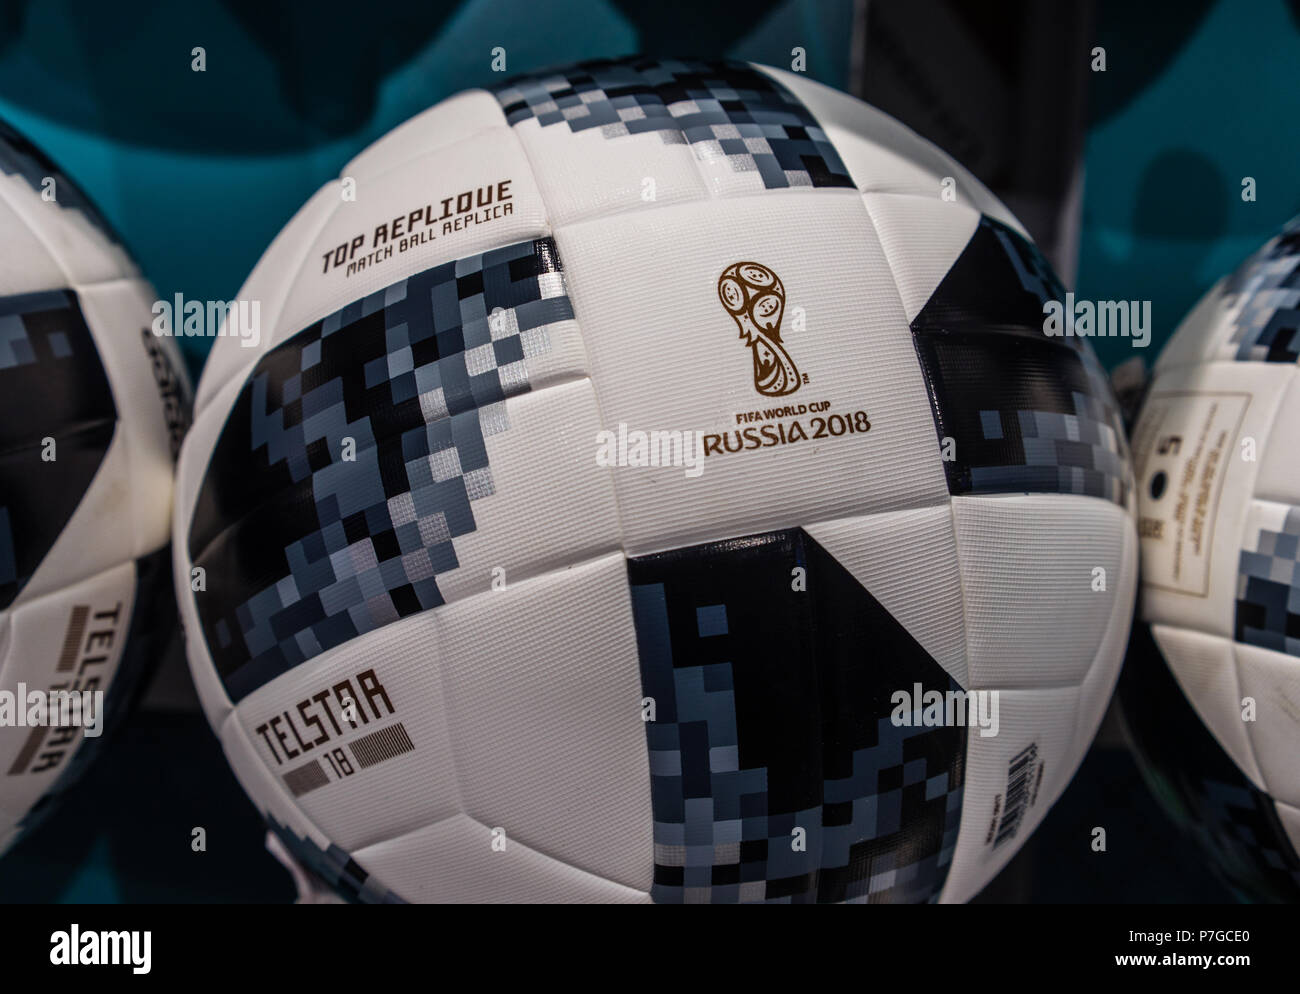 El 2 de julio de 2018 Moscú, Rusia balón oficial de la Copa Mundial de la 2018 Adidas Telstar 18 Fotografía de stock -